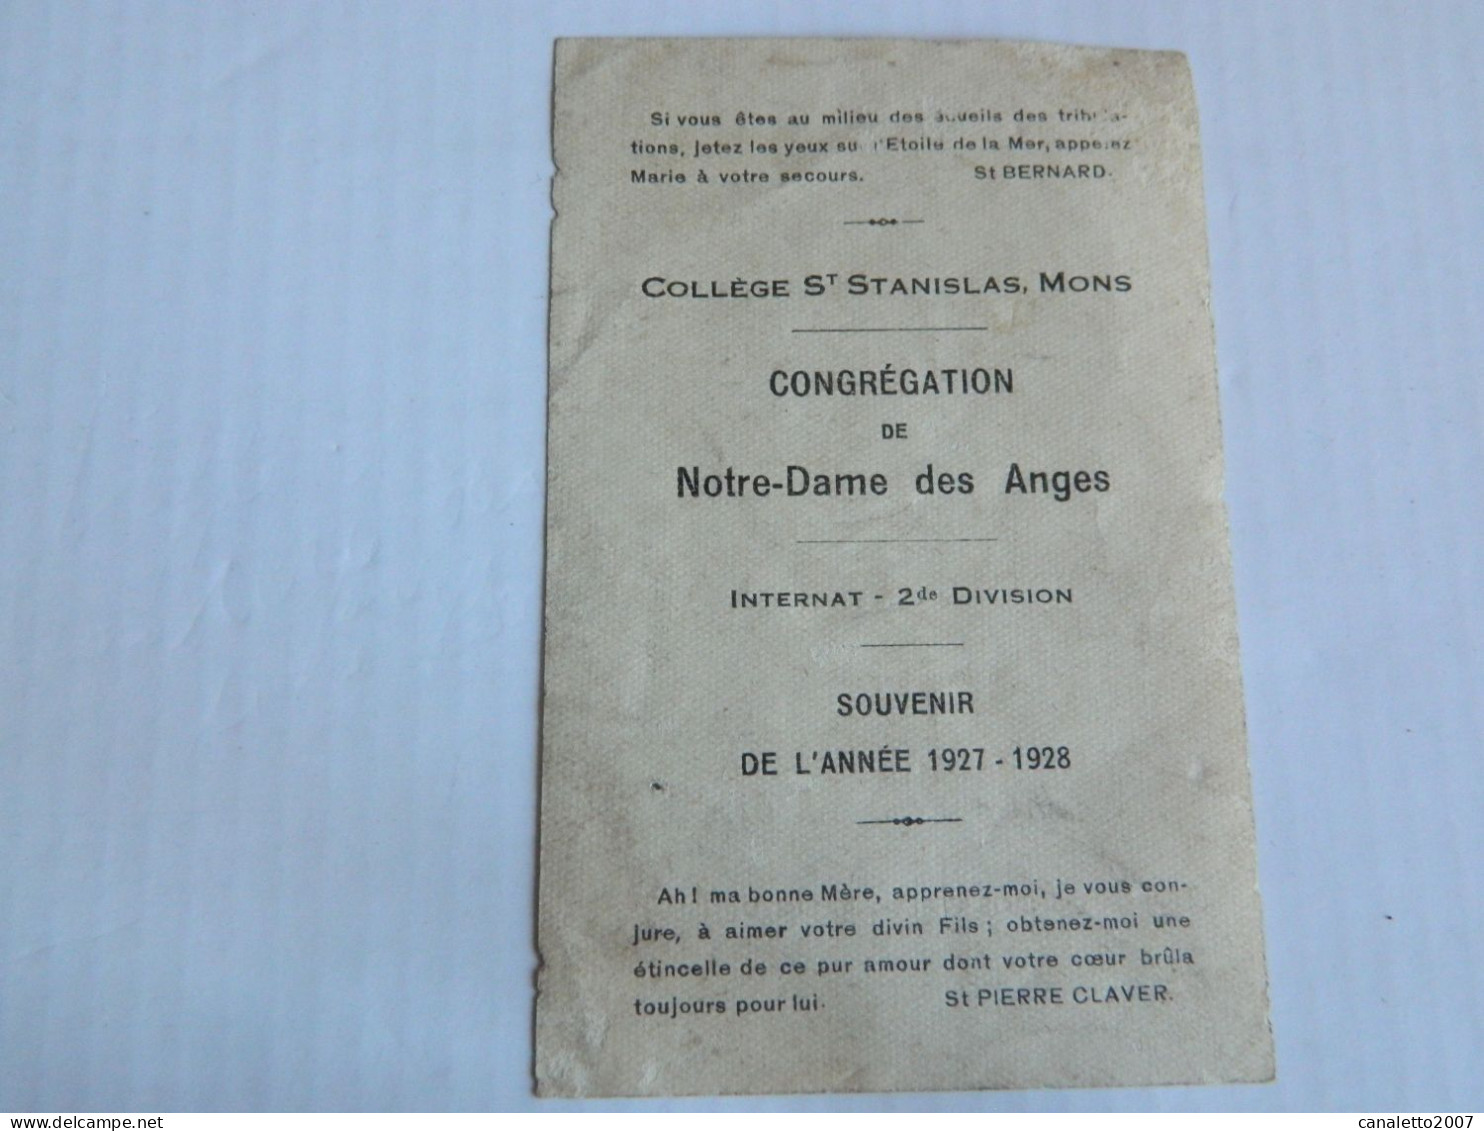 MONS: COLLEGE ST STANISLAS CONGREGATION DE N-D DES ANGES INTERNAT 2 ME DIVISION SOUVENIR DE L'ANNEE 1927/1928 - Imágenes Religiosas